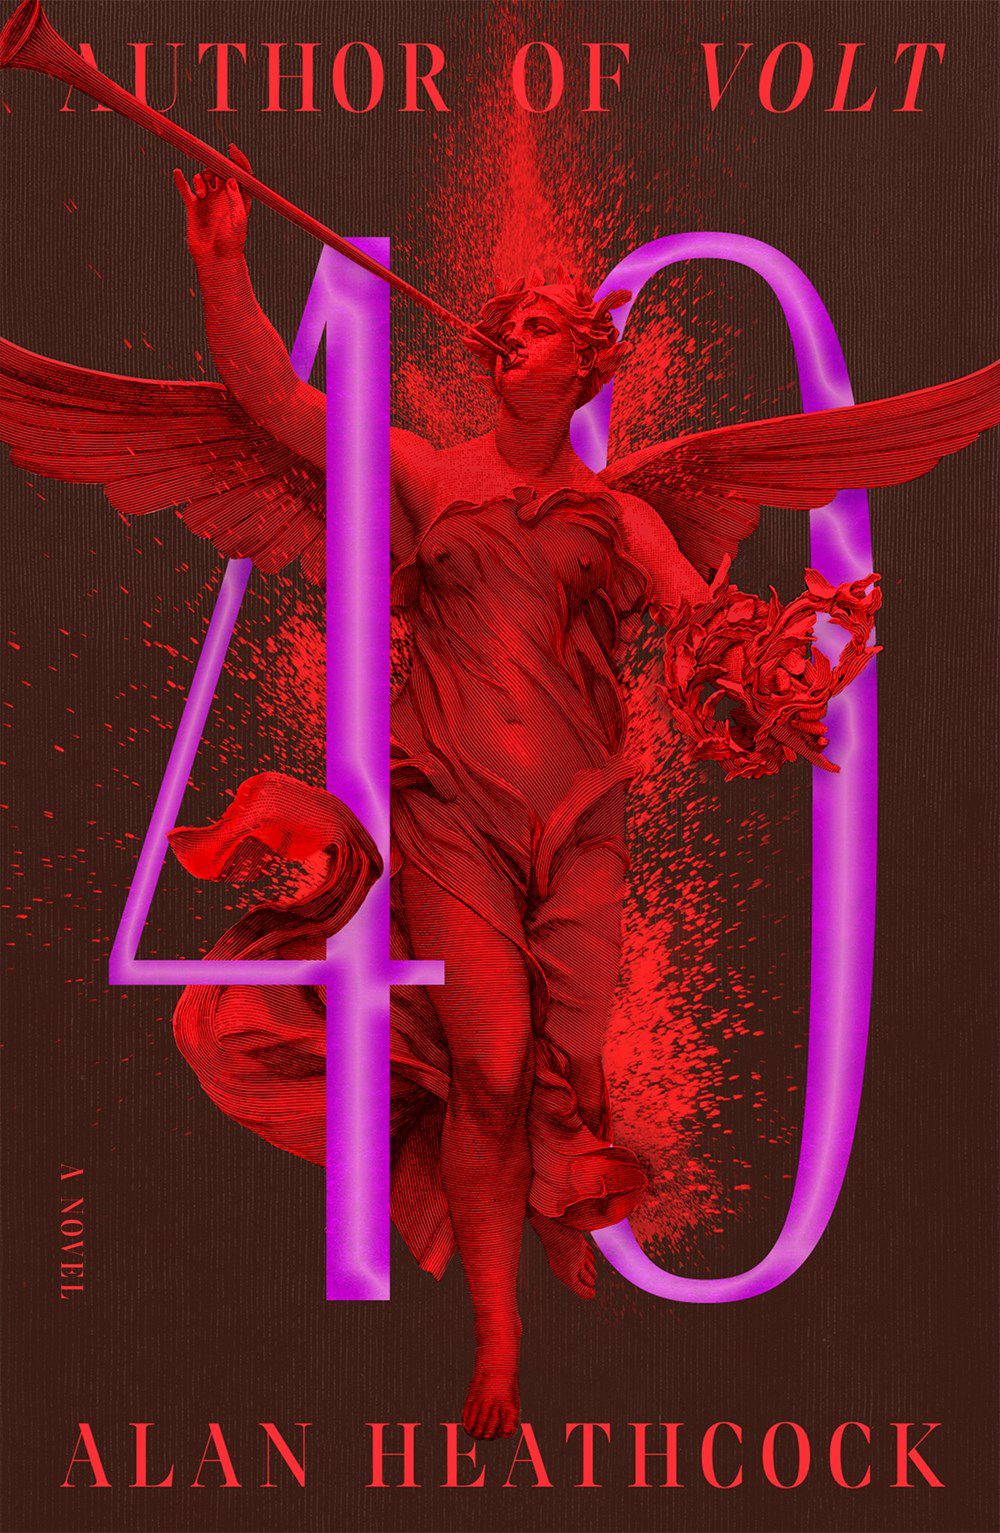 Immagine di copertina di 40 di Alan Heathcock, un'immagine luminosa con una figura rossa simile a un angelo all'interno delle cifre 4 e 0.